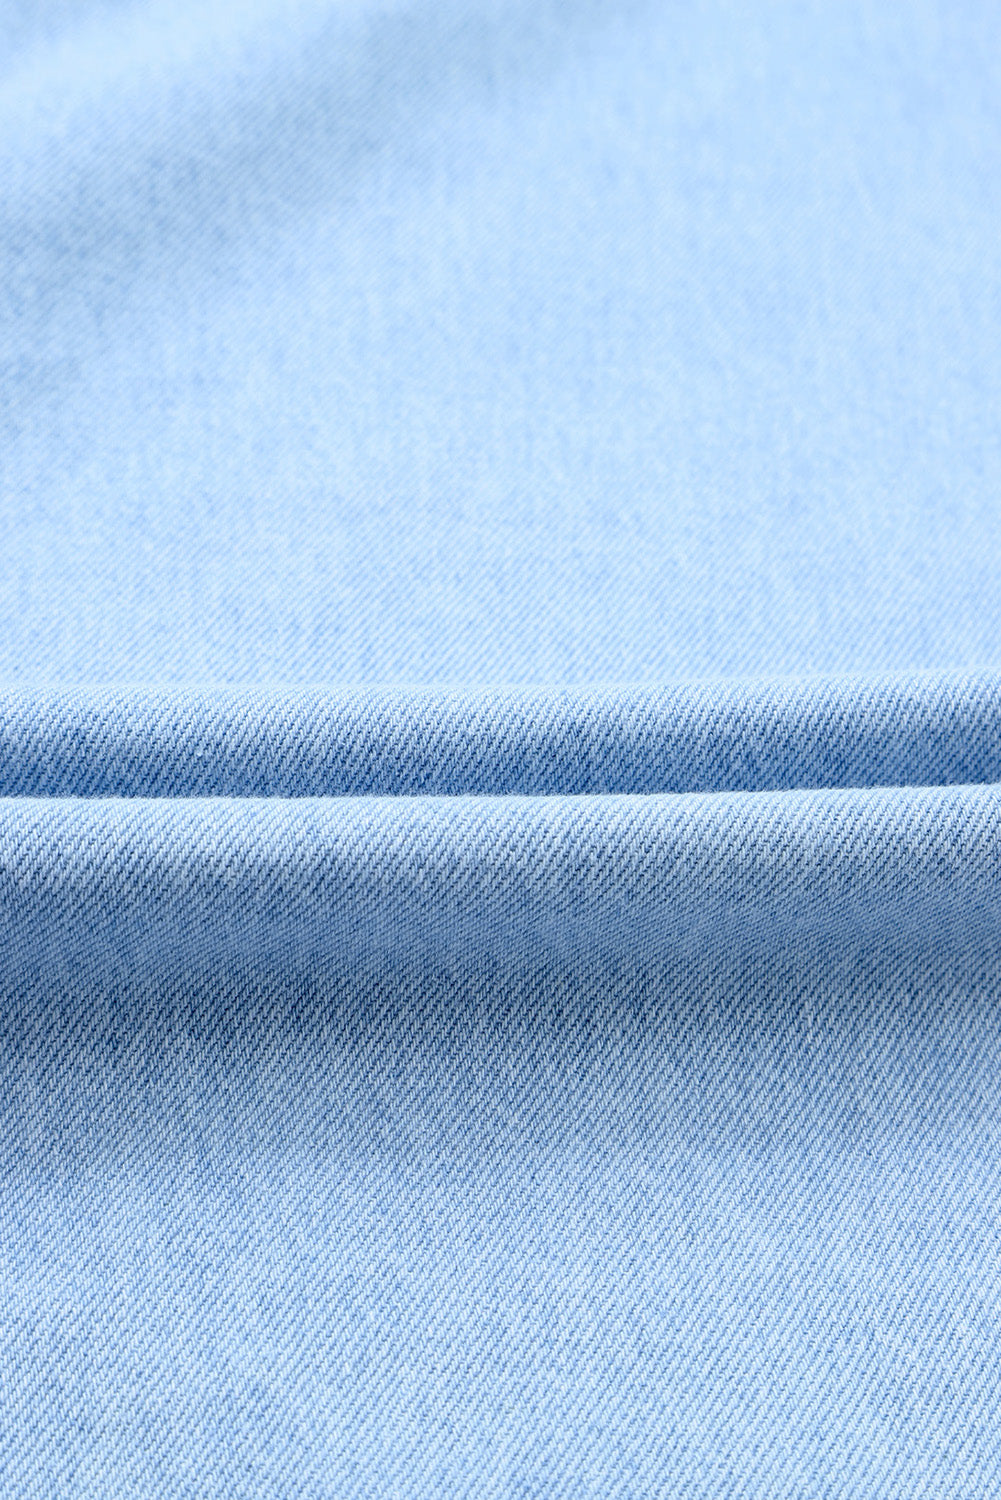 Sky Blue Buttoned Wrap Maxi Denim Skirt